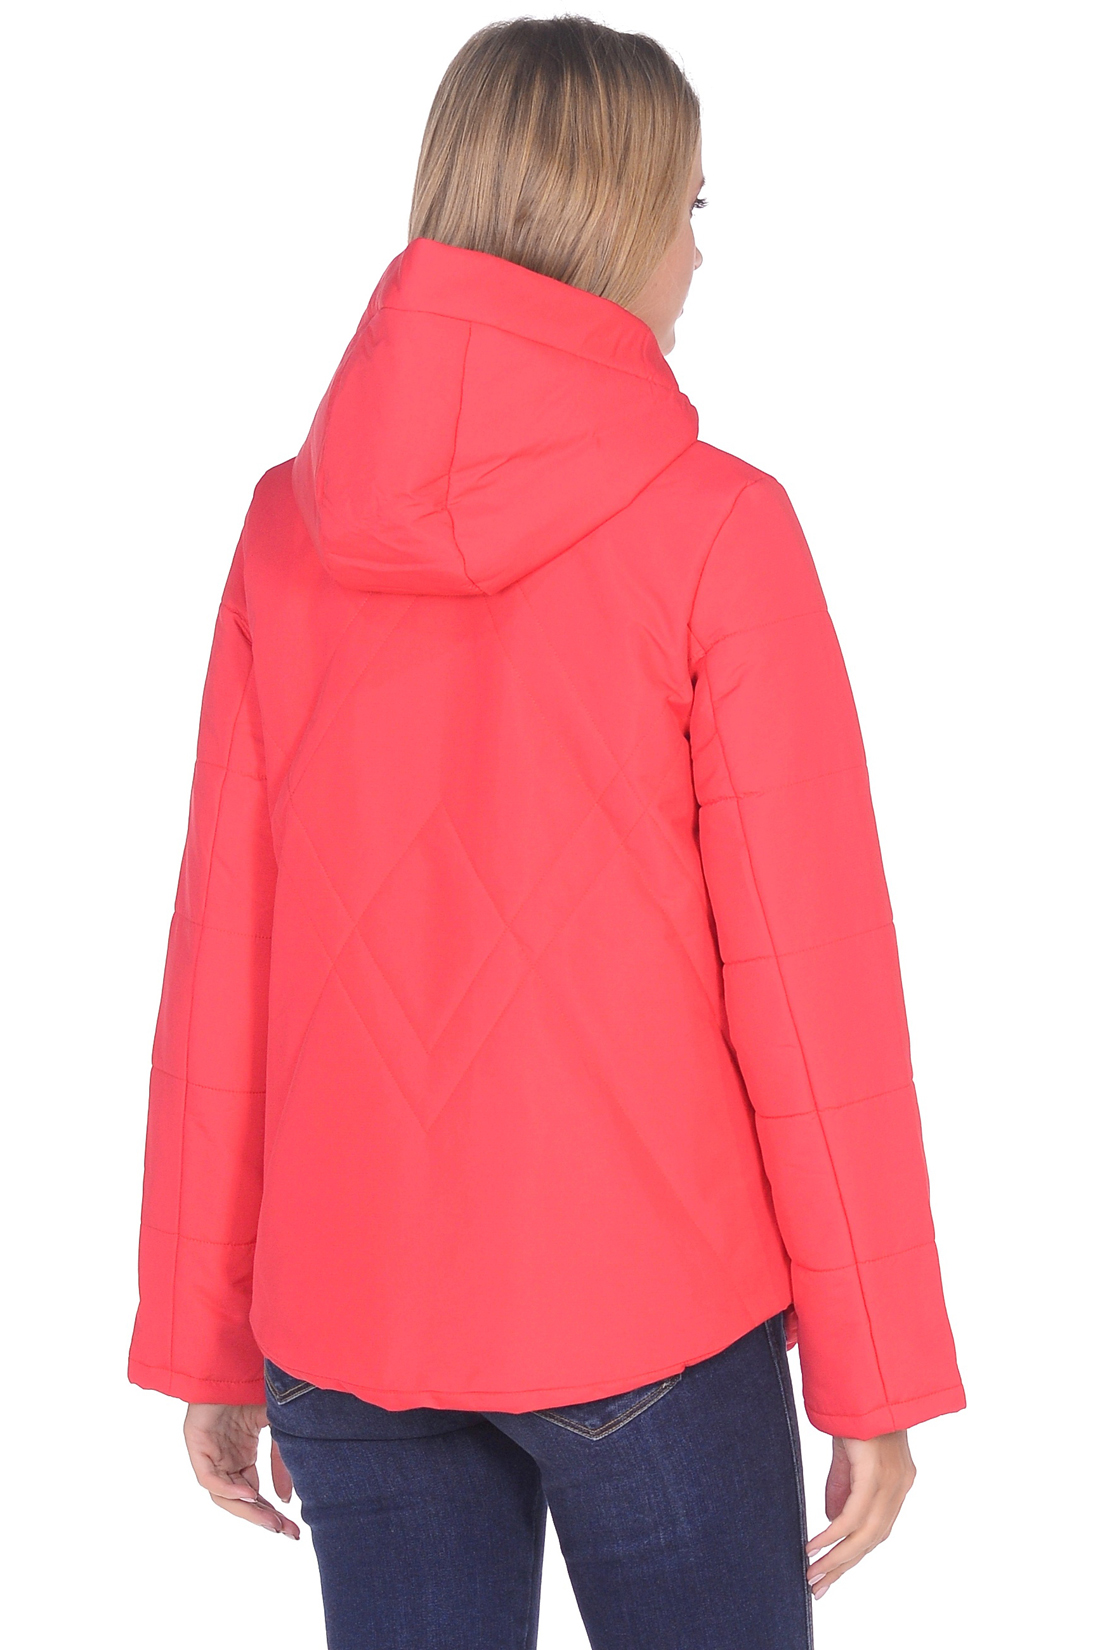 Куртка-трапеция с капюшоном (арт. baon B039047), размер L, цвет красный Куртка-трапеция с капюшоном (арт. baon B039047) - фото 6